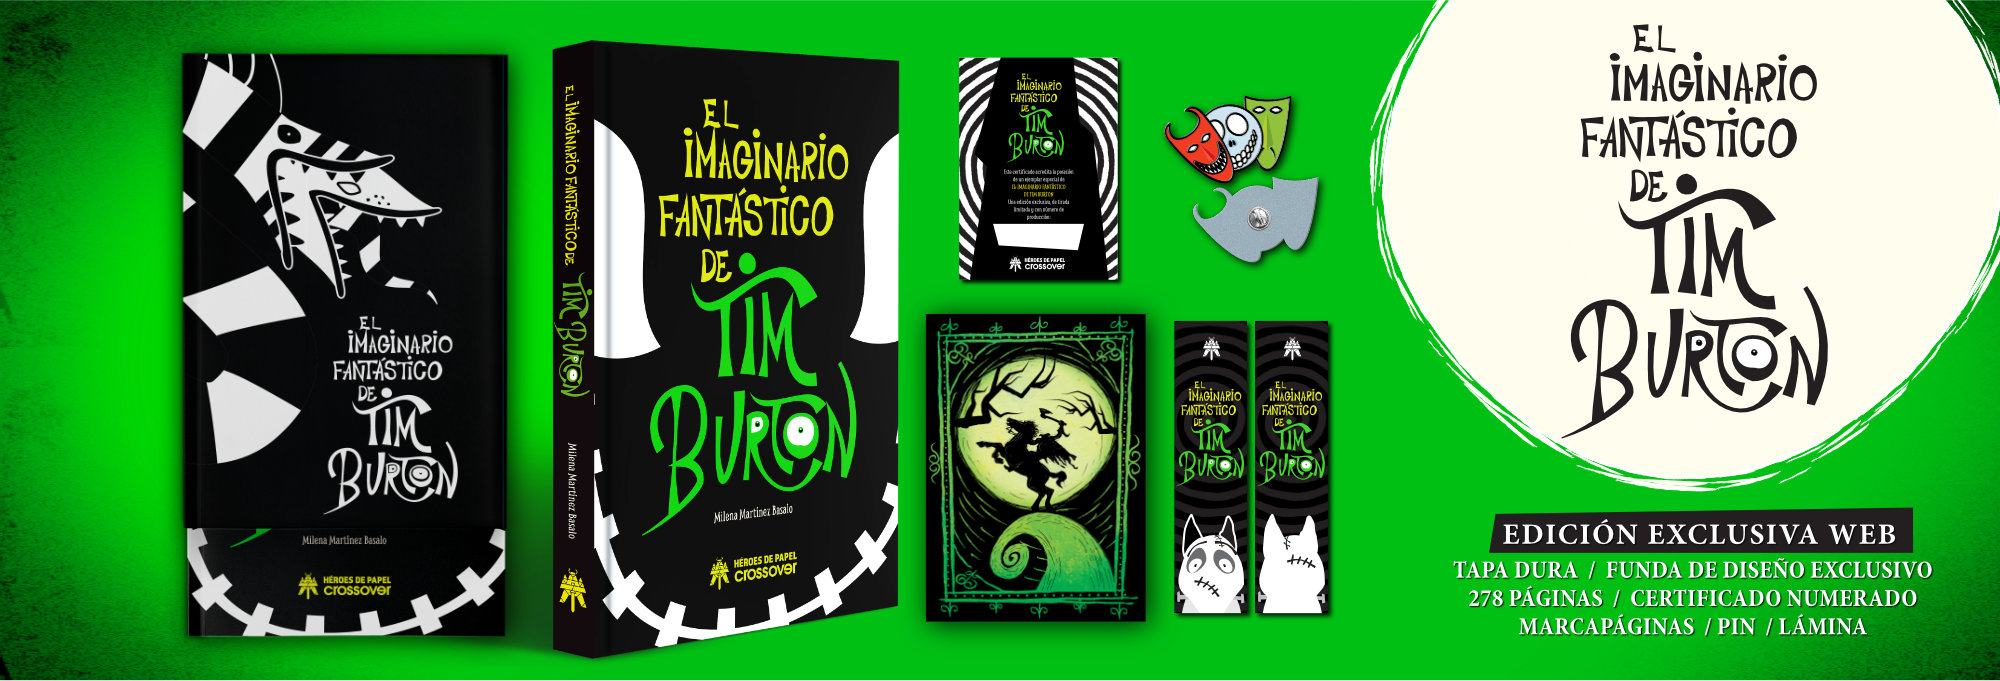 El imaginario fantástico de Tim Burton 